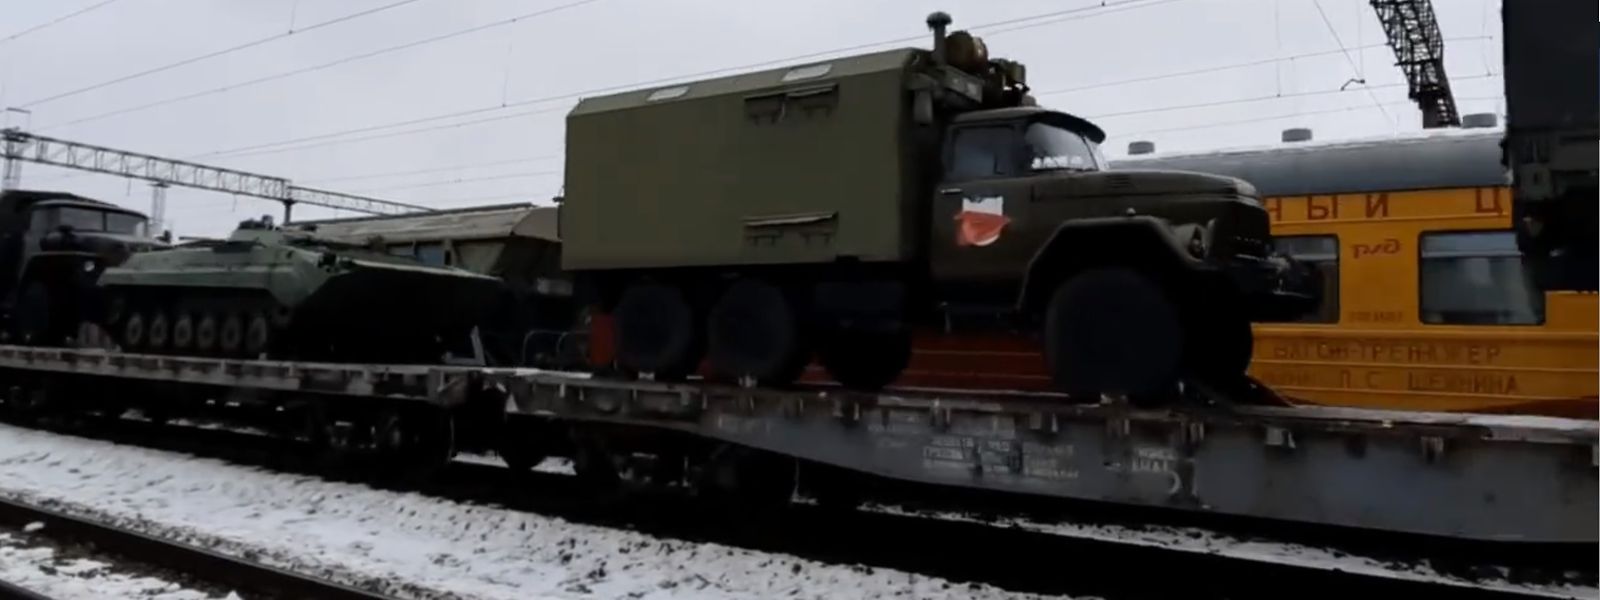 Züge bringen Tonnen an schwerem Kriegsmaterial an die Grenze zur Ukraine.